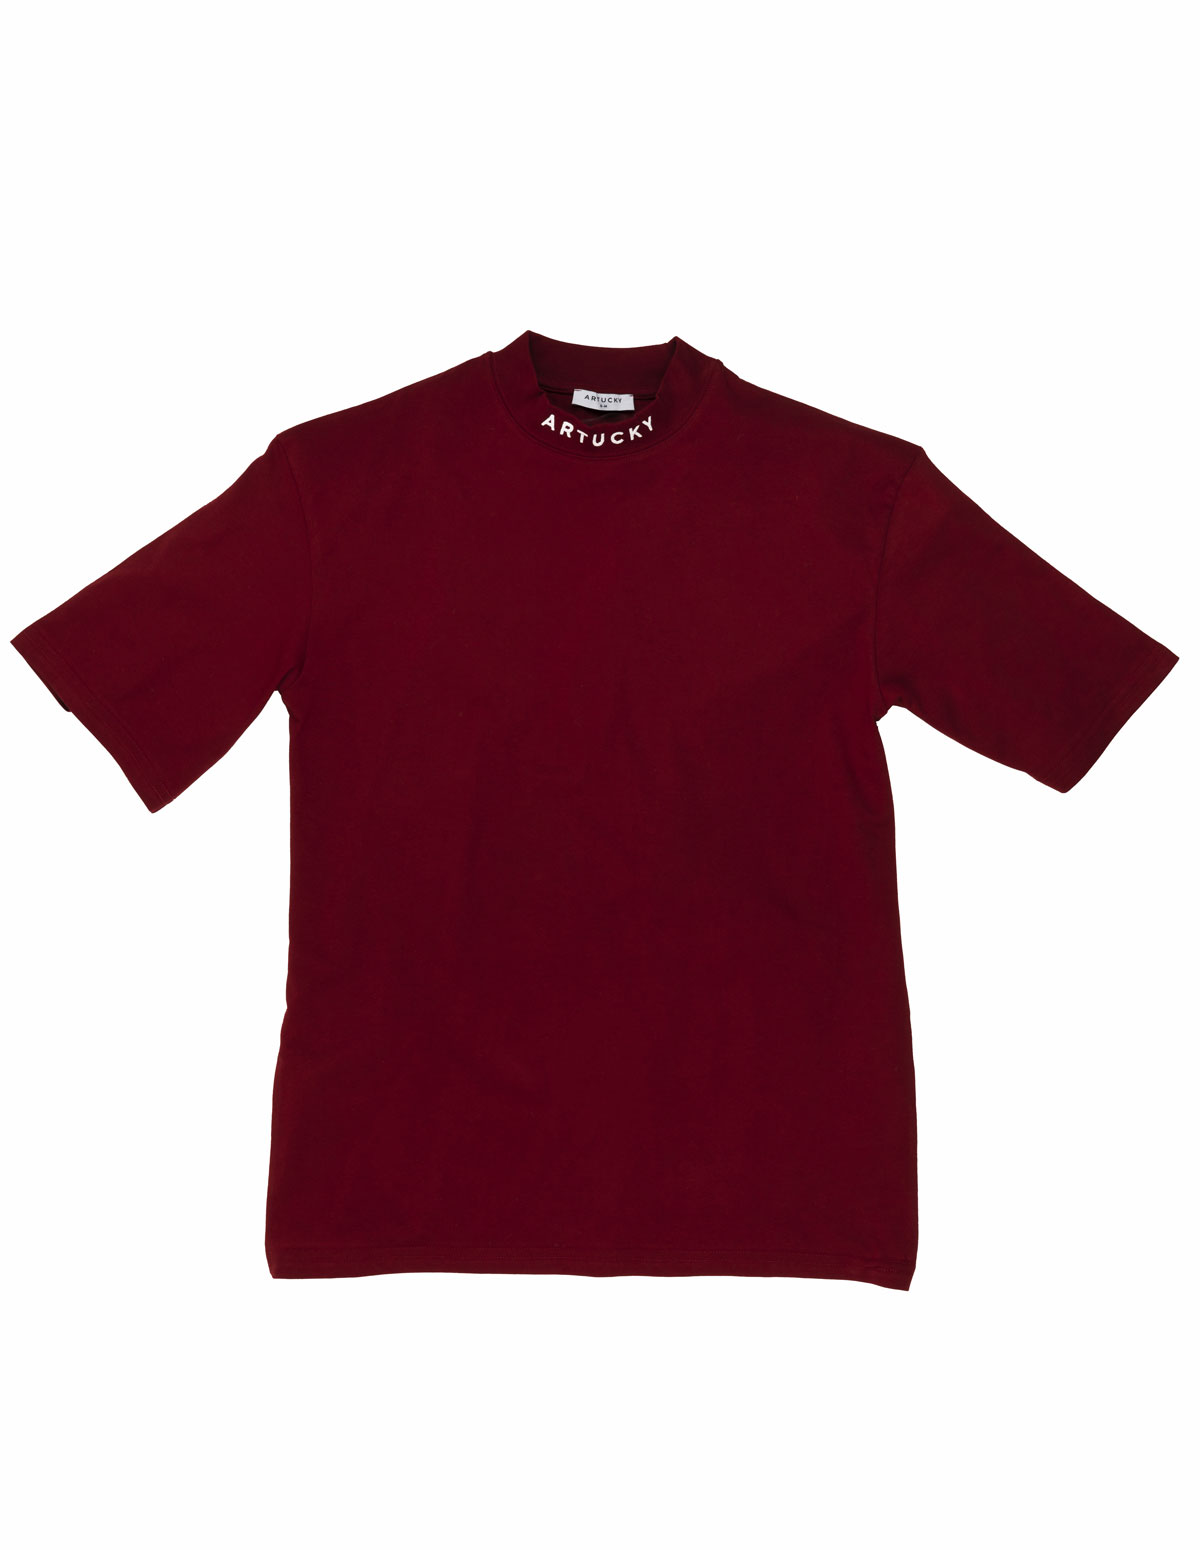 Artucky Oversize T-Shirt claret red